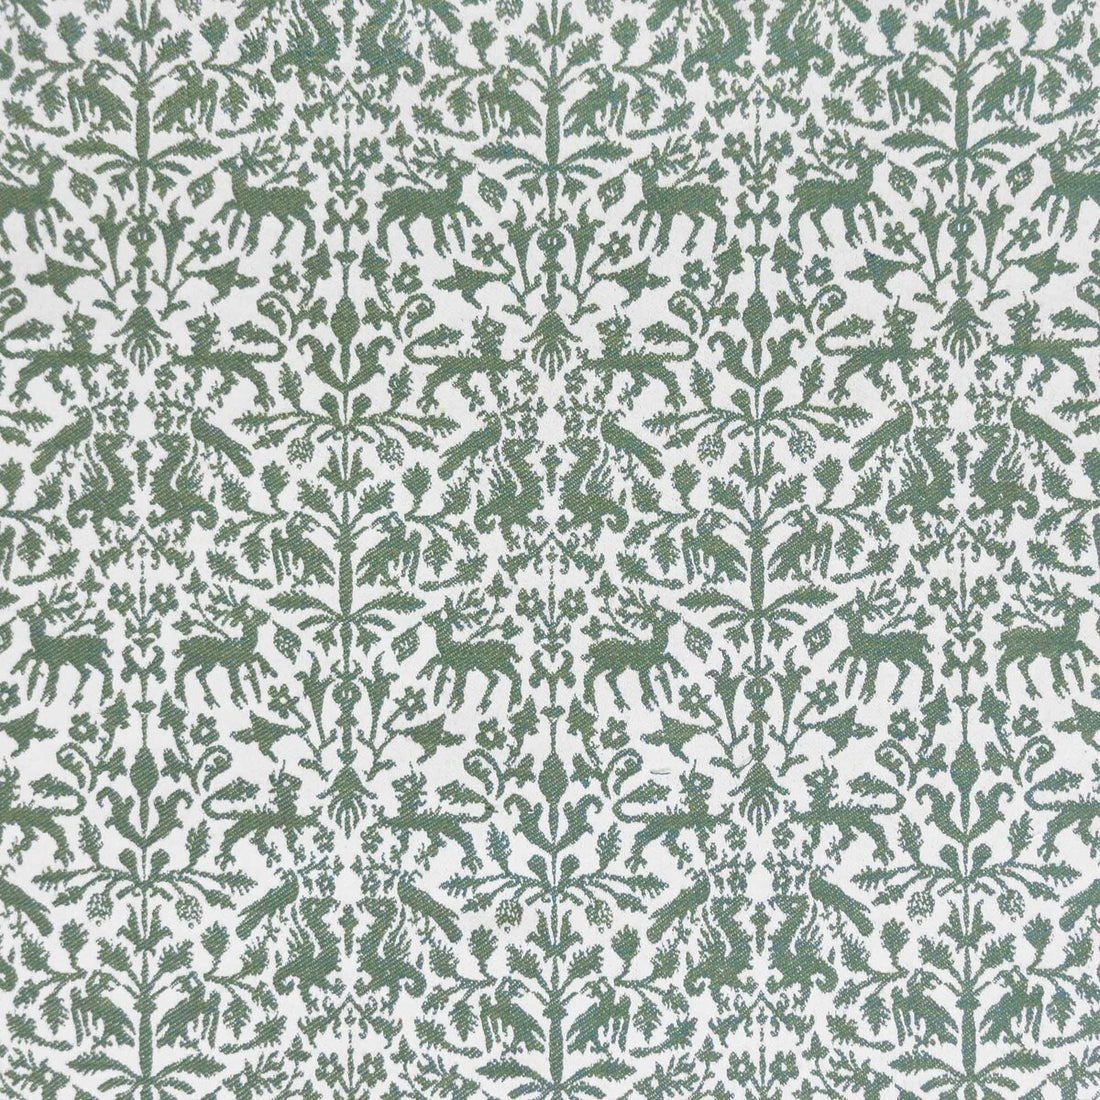 Augusta Emerita fabric in verde color - pattern LCT1112.008.0 - by Gaston y Daniela in the Lorenzo Castillo IX Hesperia collection